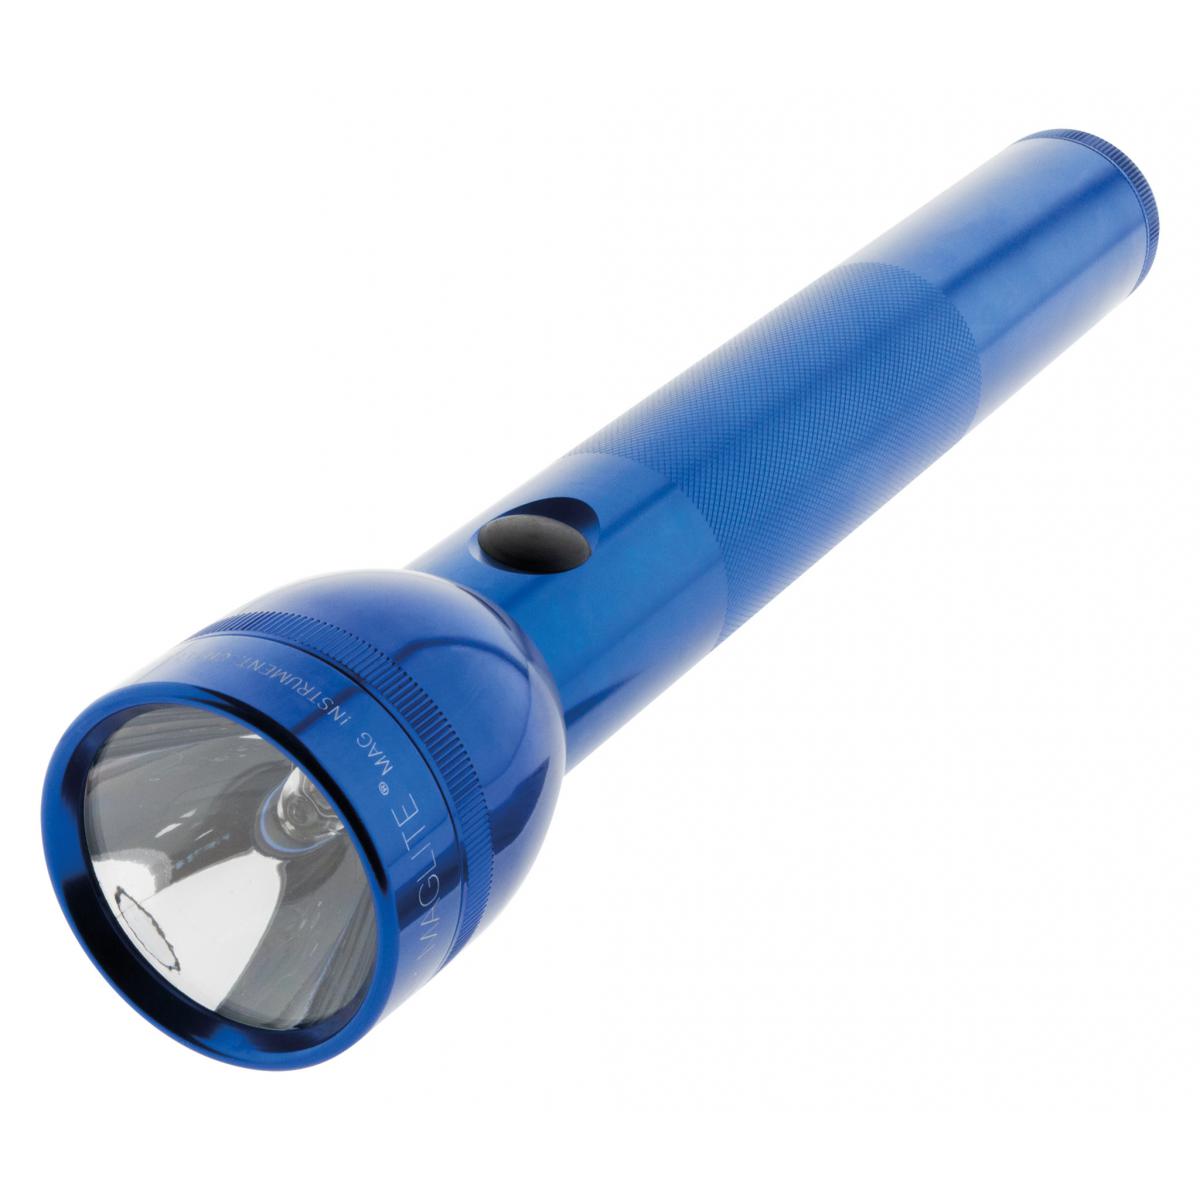 Maglite - Lampe torche Maglite S3D 3 piles Type D 31 cm - Bleu - Lampes portatives sans fil